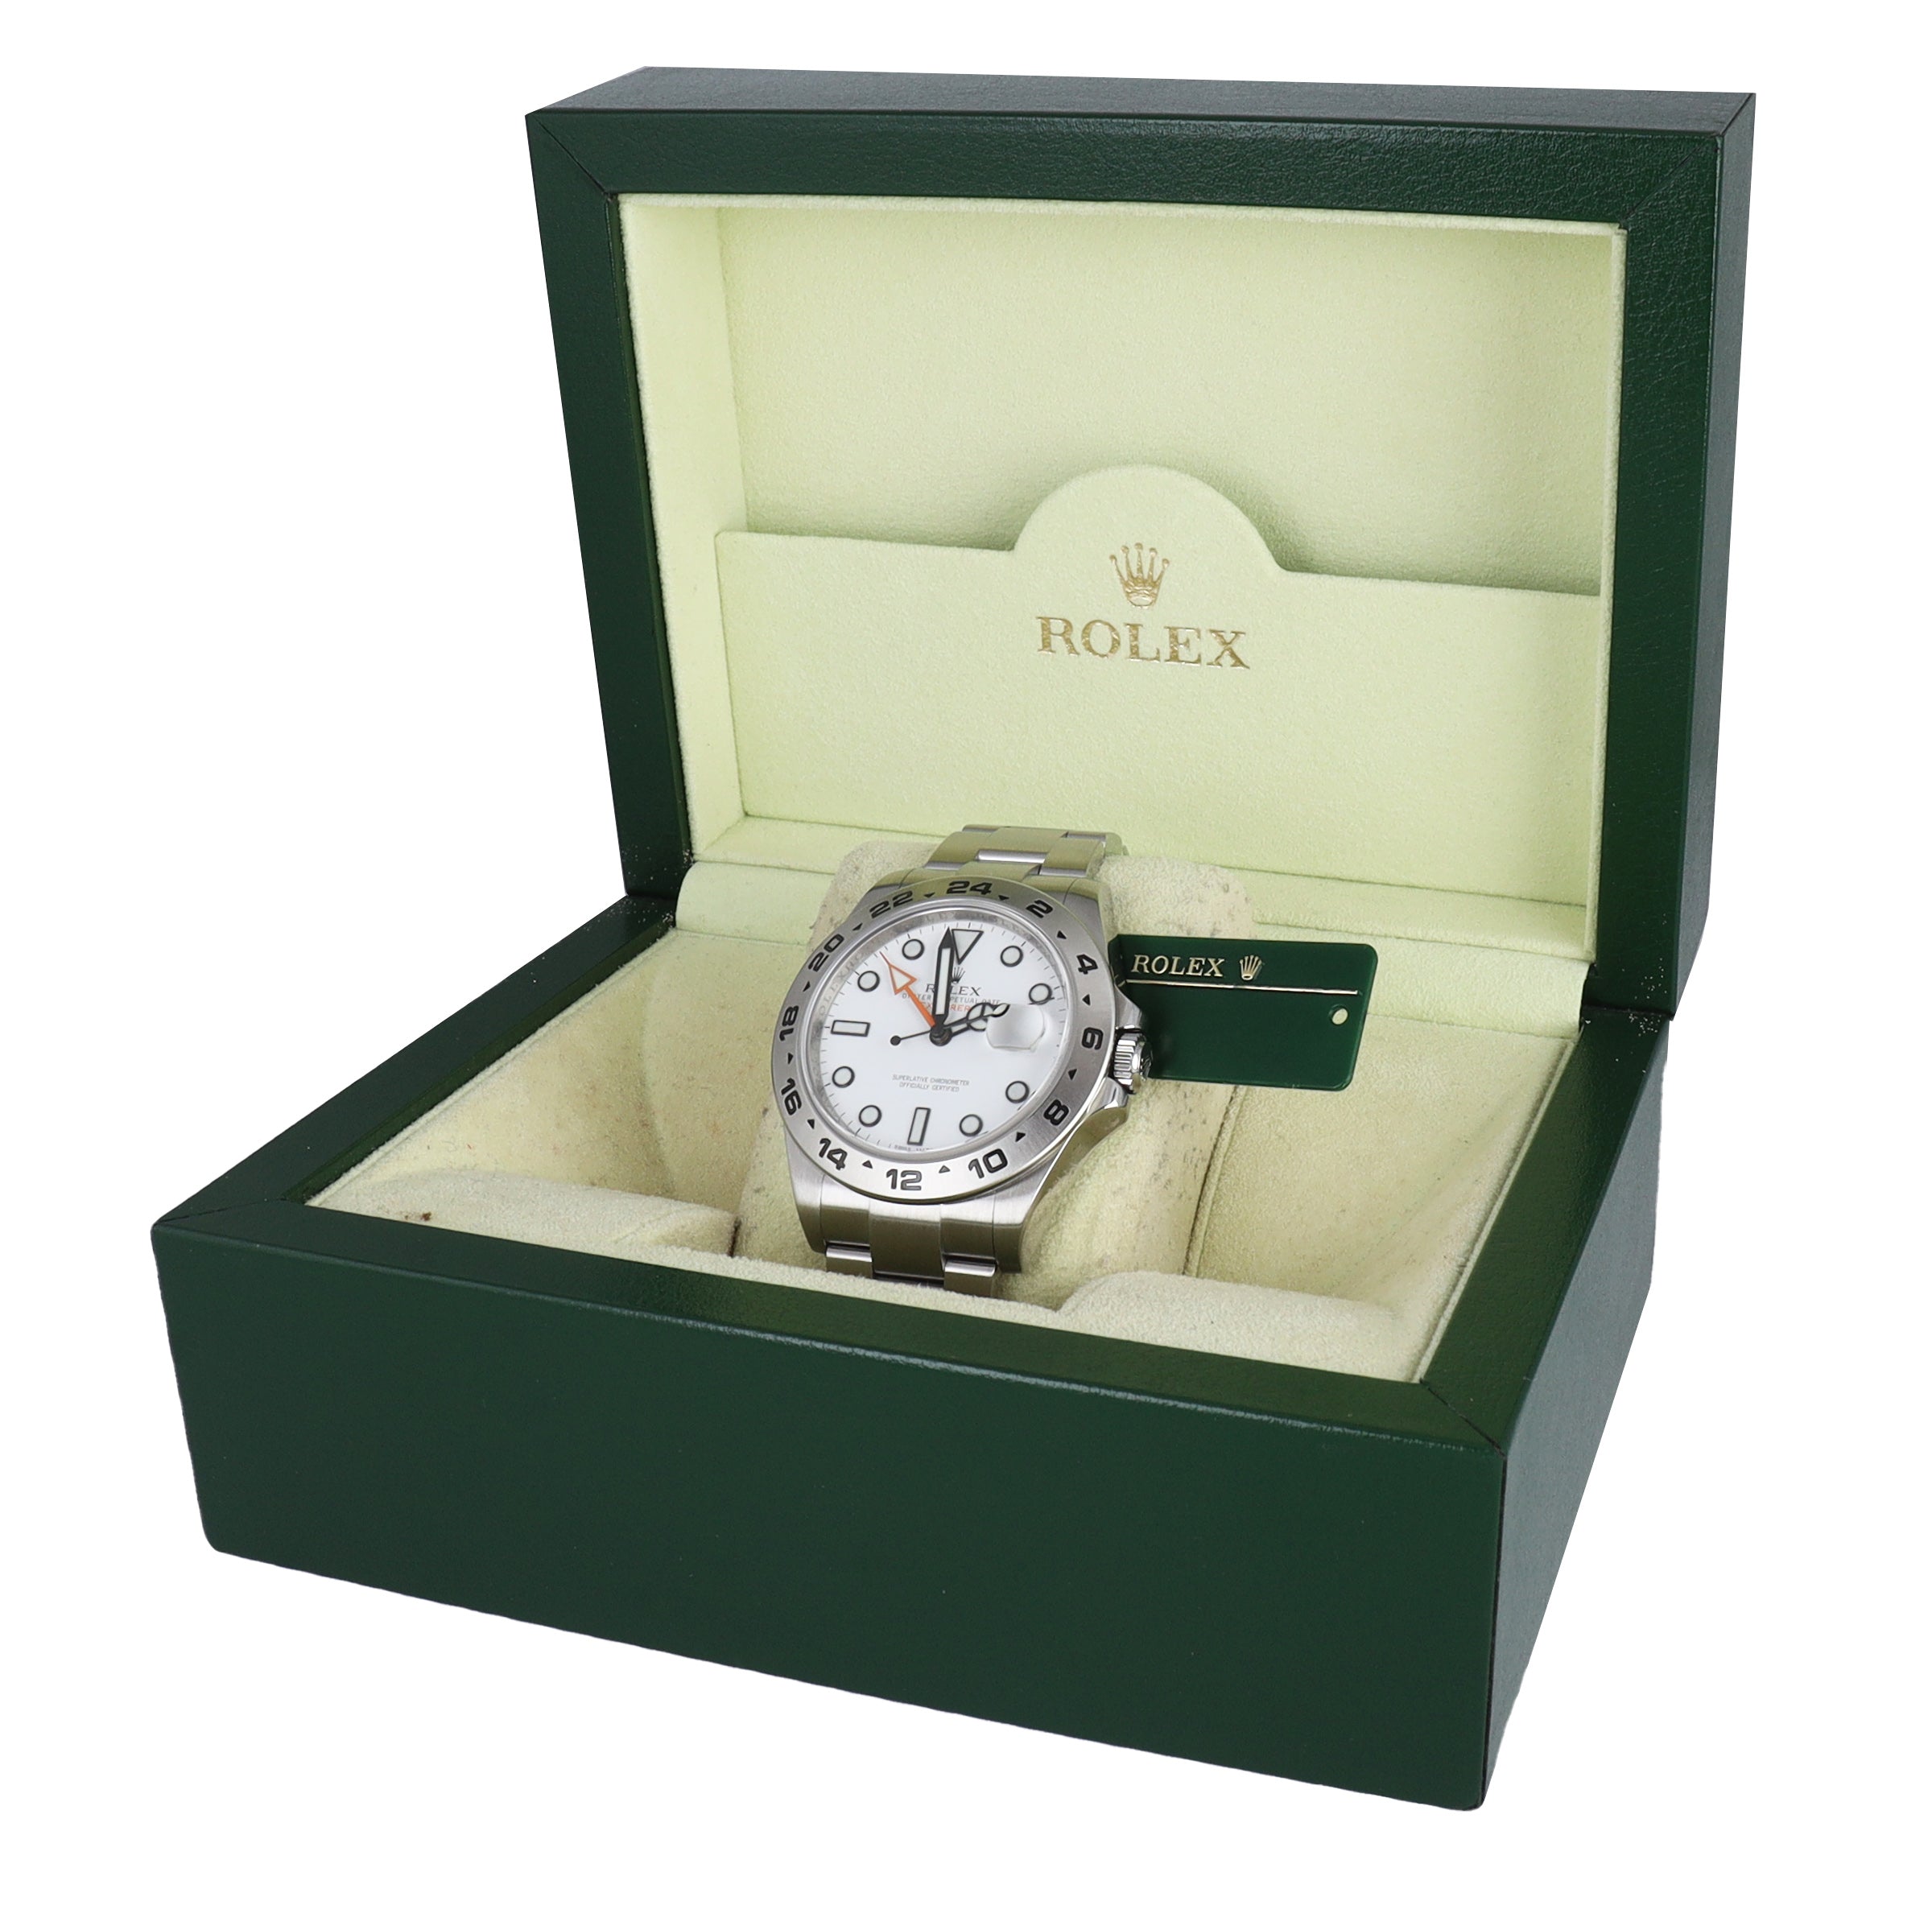 MINT 2012 Rolex Explorer II Polar 42mm 216570 White Orange Steel GMT Watch